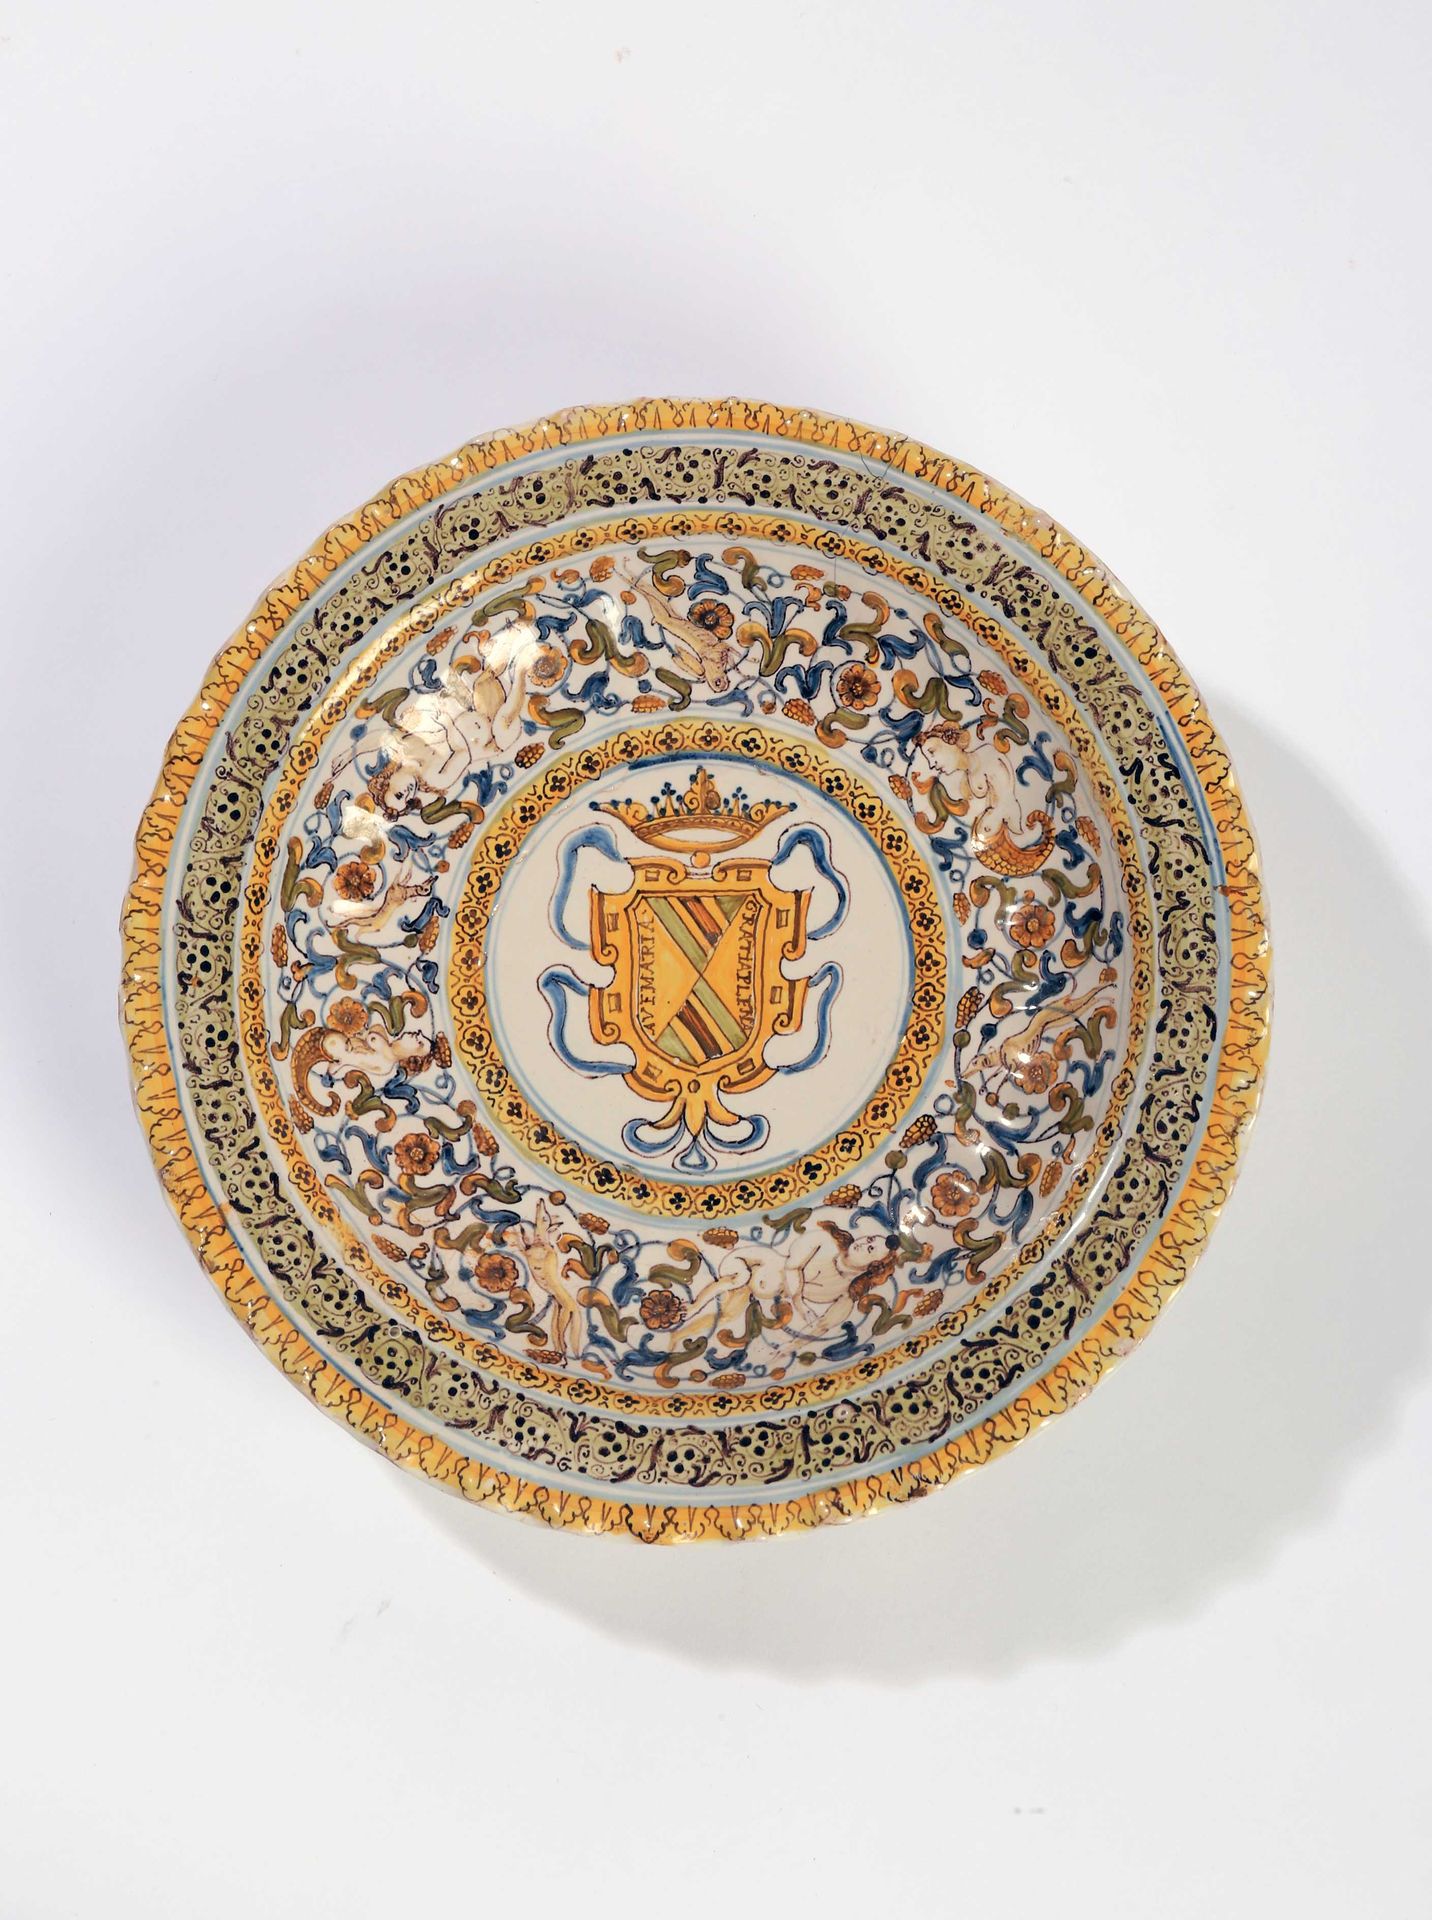 Null 卡斯泰利

中间有多色装饰的圆形陶器碗

徽章中的纹章被叶子包围。

普提和动物，边缘用辫子装饰。

17世纪。

D. 26,5厘米。

(一条裂缝&hellip;